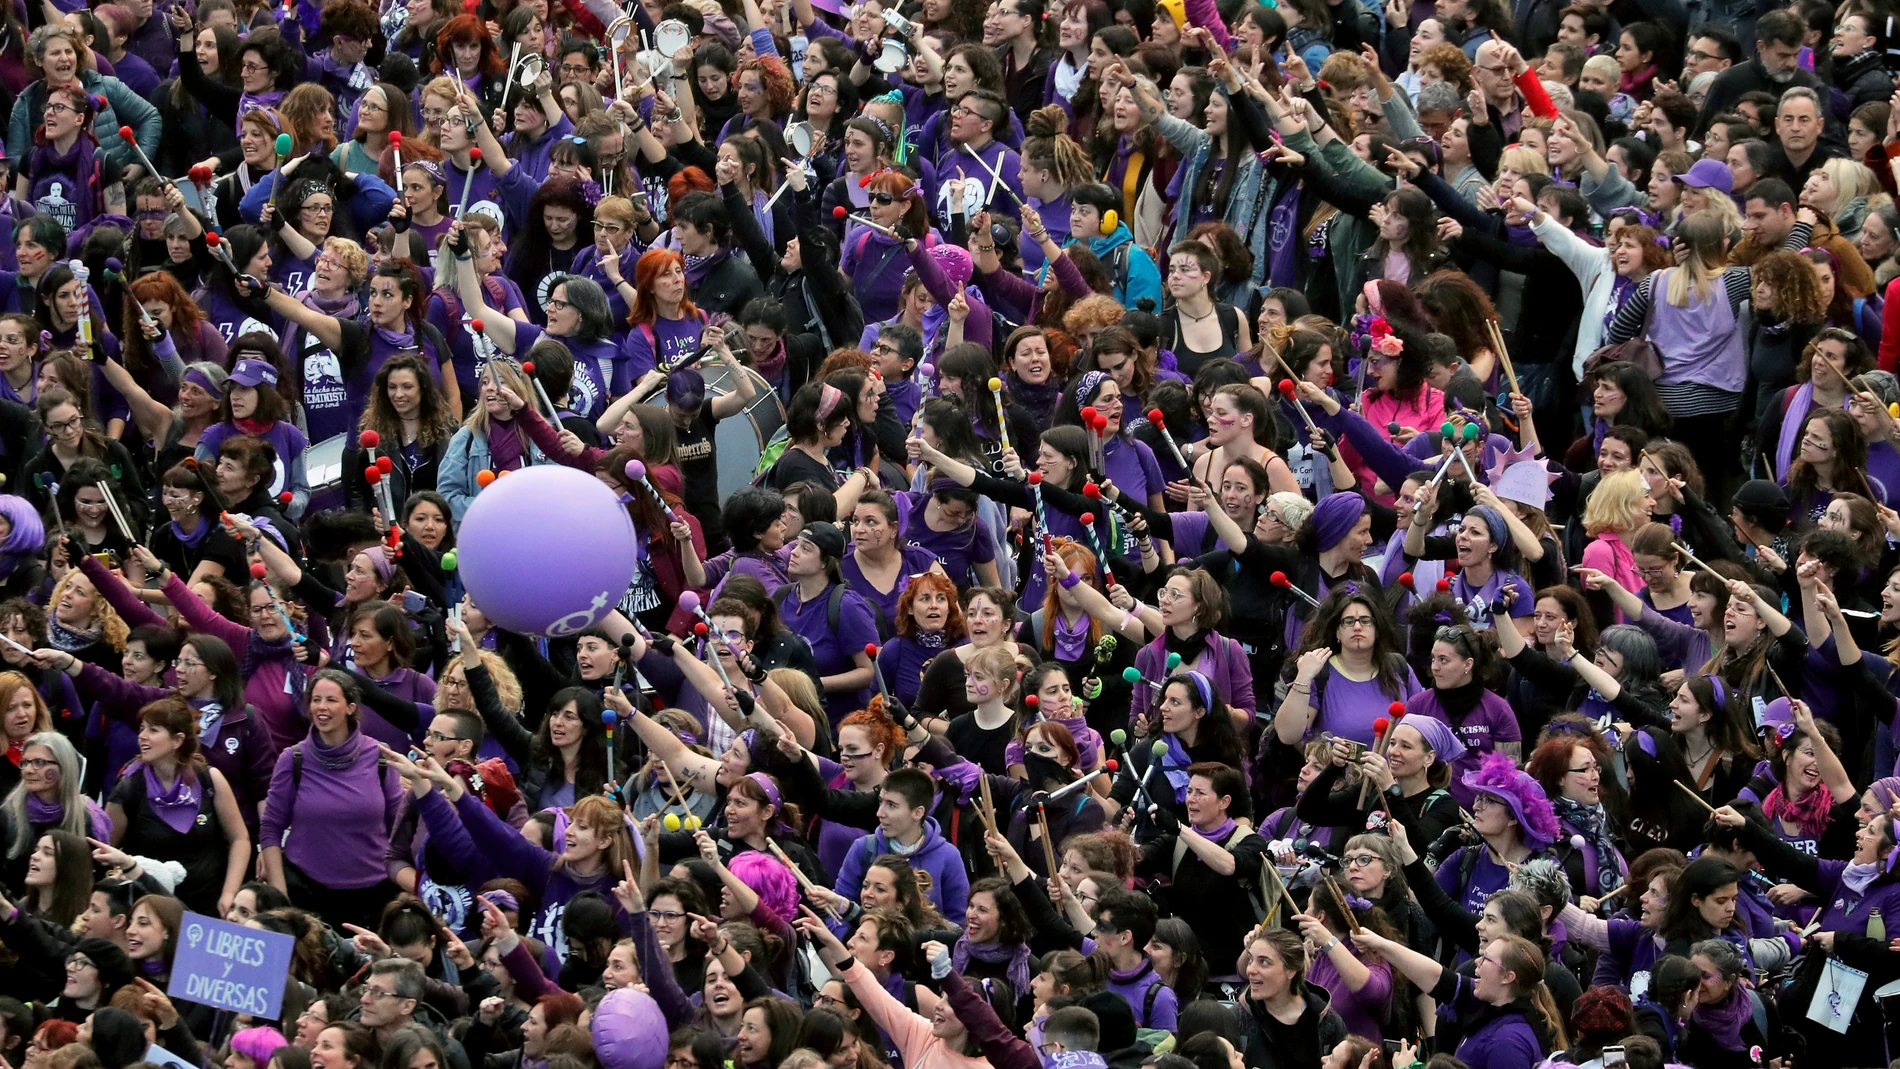 Imagen de la movilización feminista del 8M en Madrid correspondiente al año 2020